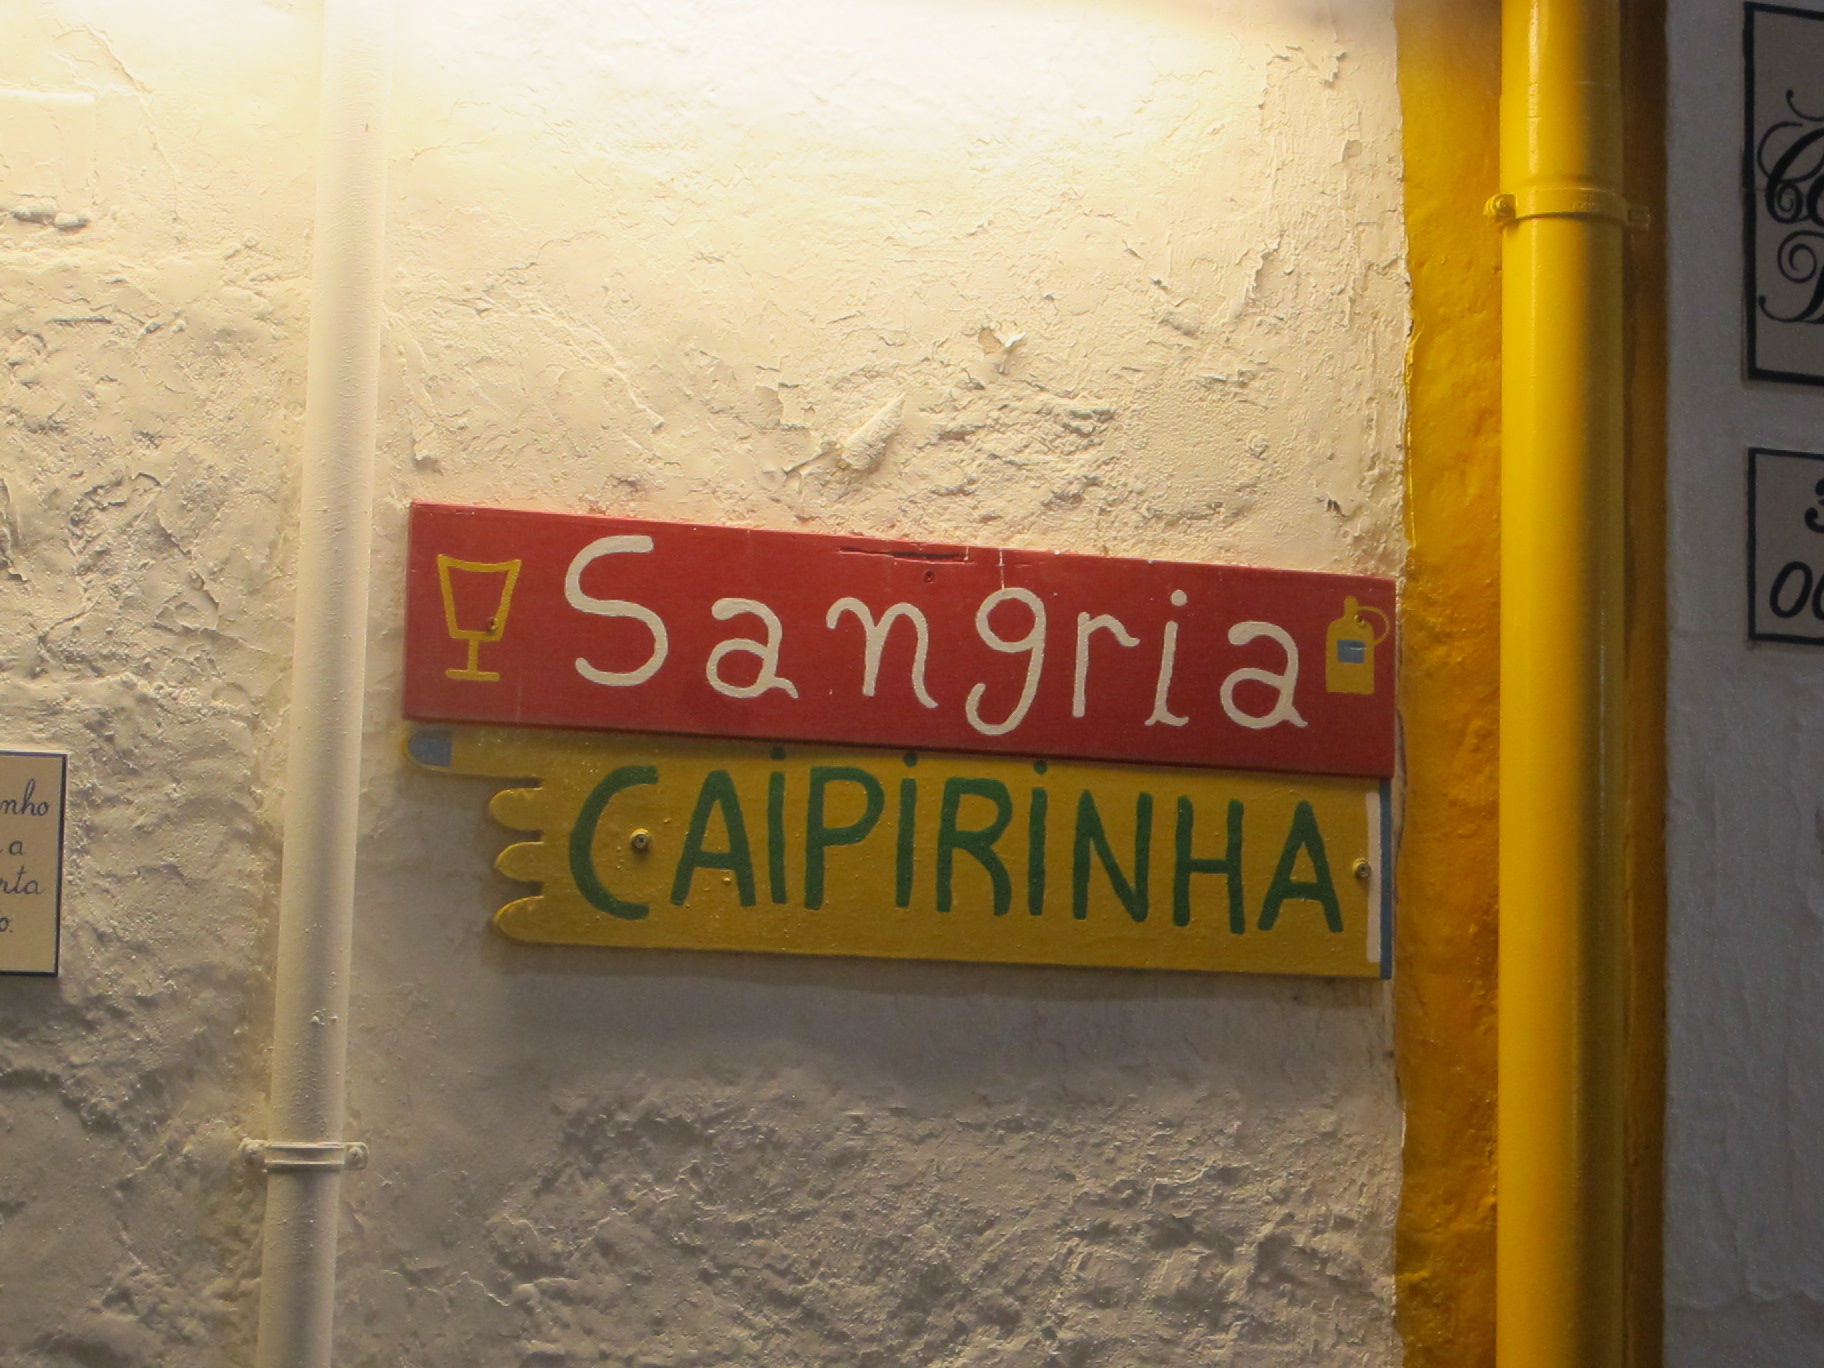 The ubiquitous caipirinha - Brazil's national drink has come to Albufeira.